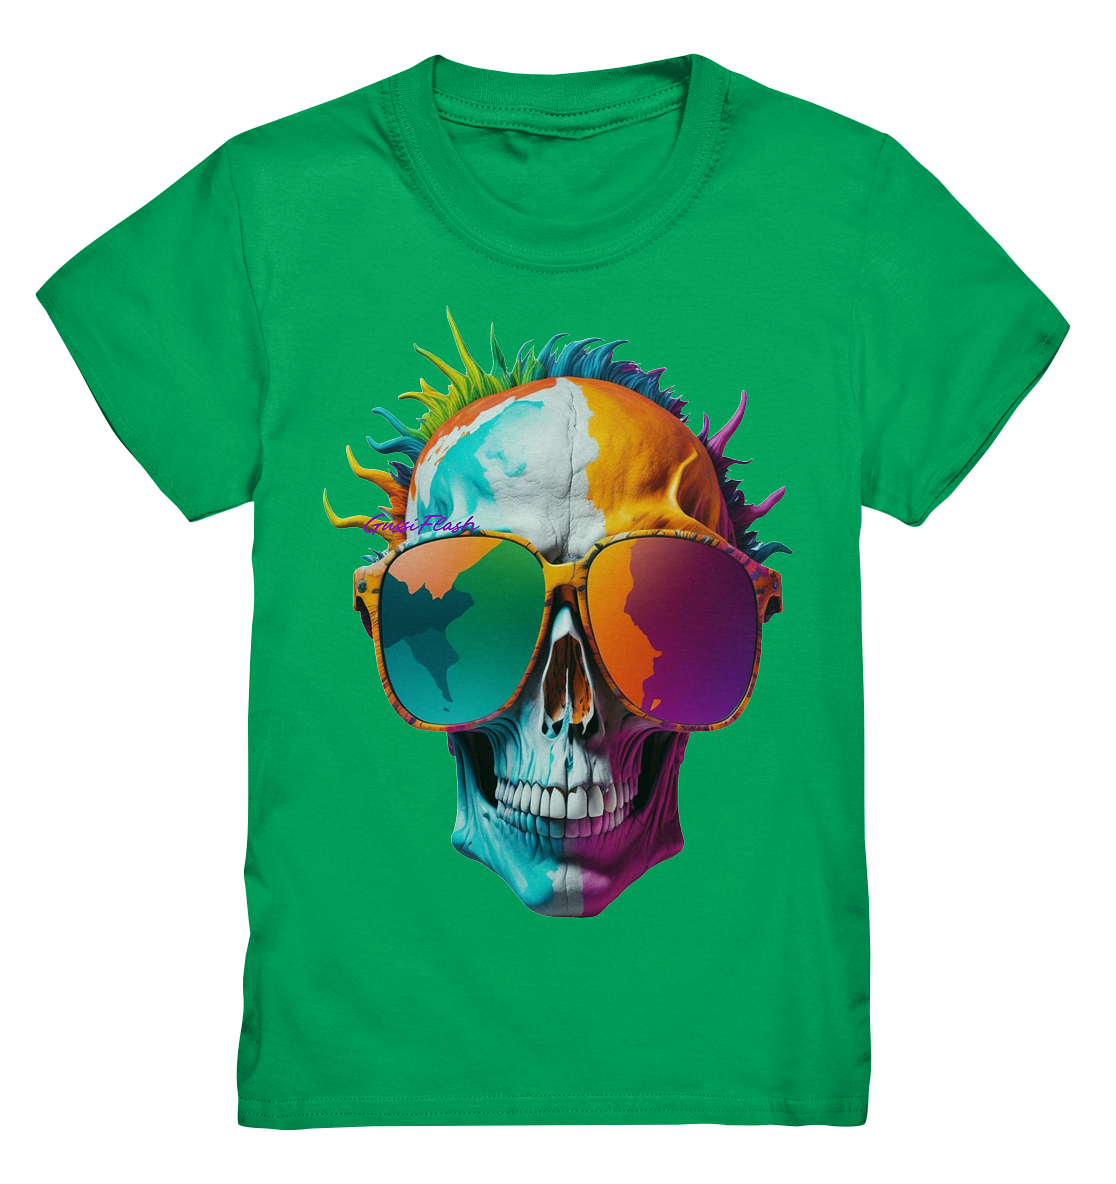 Lustiger Totenkopf mit Brille in vielen Farben. - Kids Premium Shirt